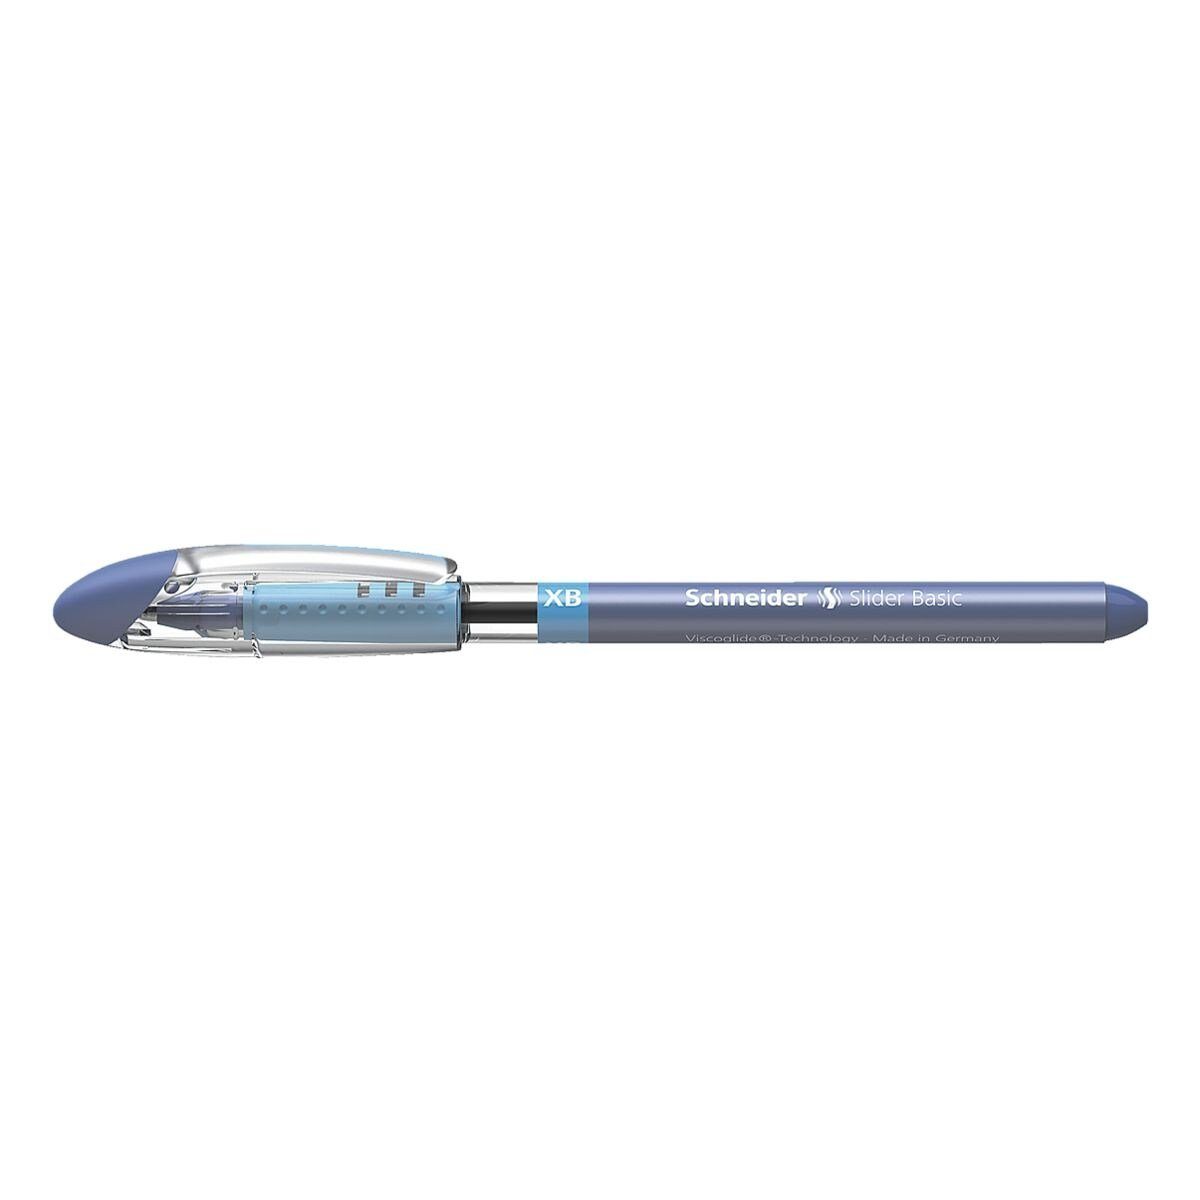 Schneider Kugelschreiber Slider 0,7 blau (XB) XB mm 1512, mit Kappe, Strichbreite